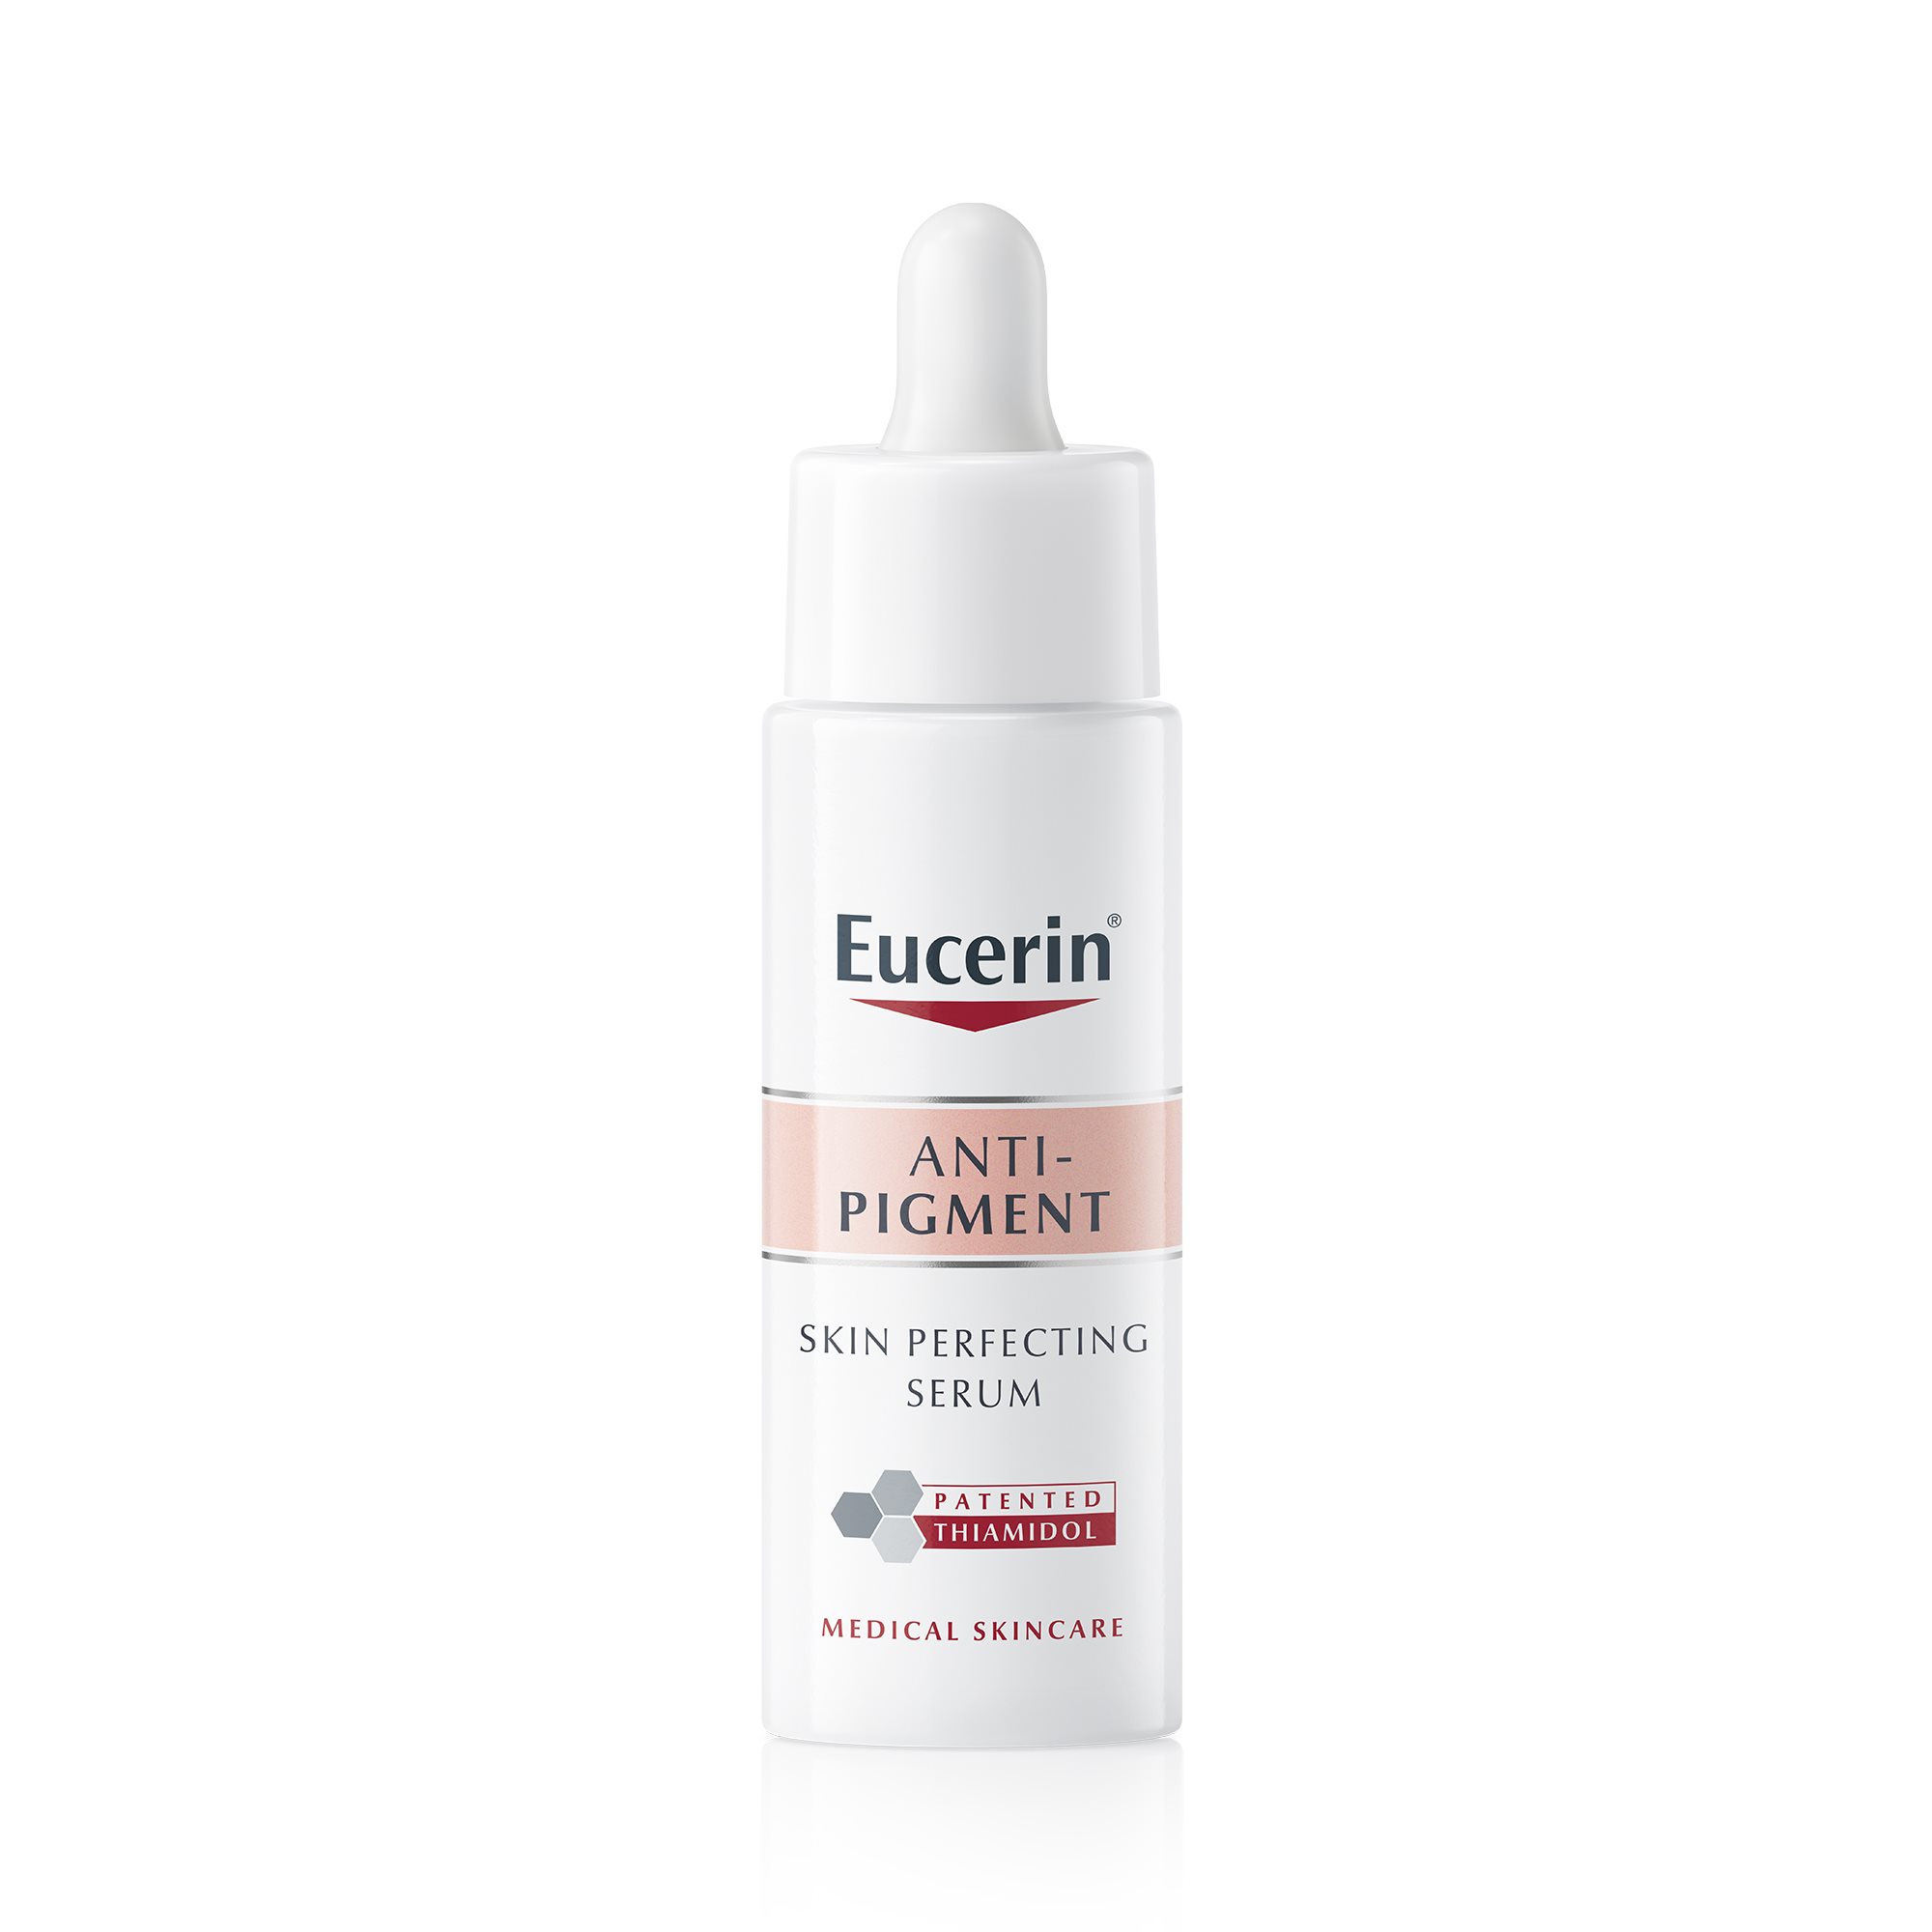 Eucerin Anti-Pigment odą skaistinantis serumas padeda turėti lygesnę ir elastingesnę odą. 